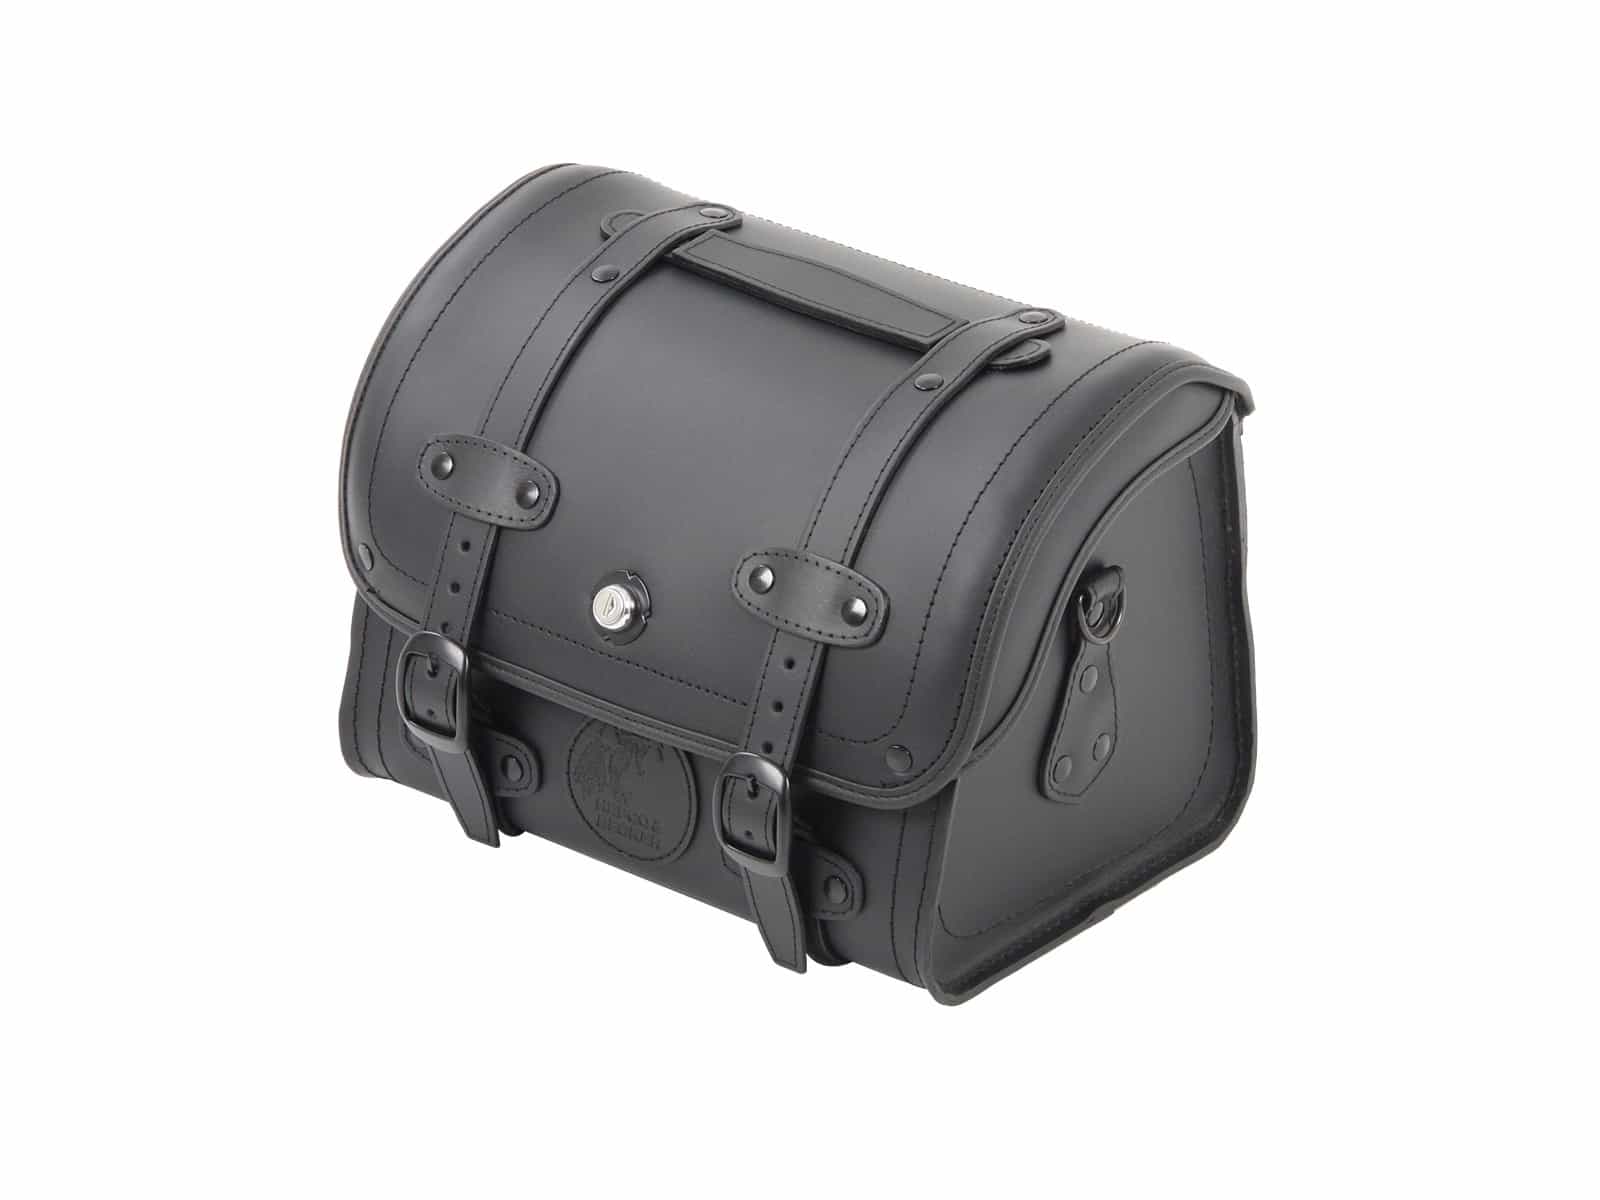 Smallbag Rugged 19 ltr. - black